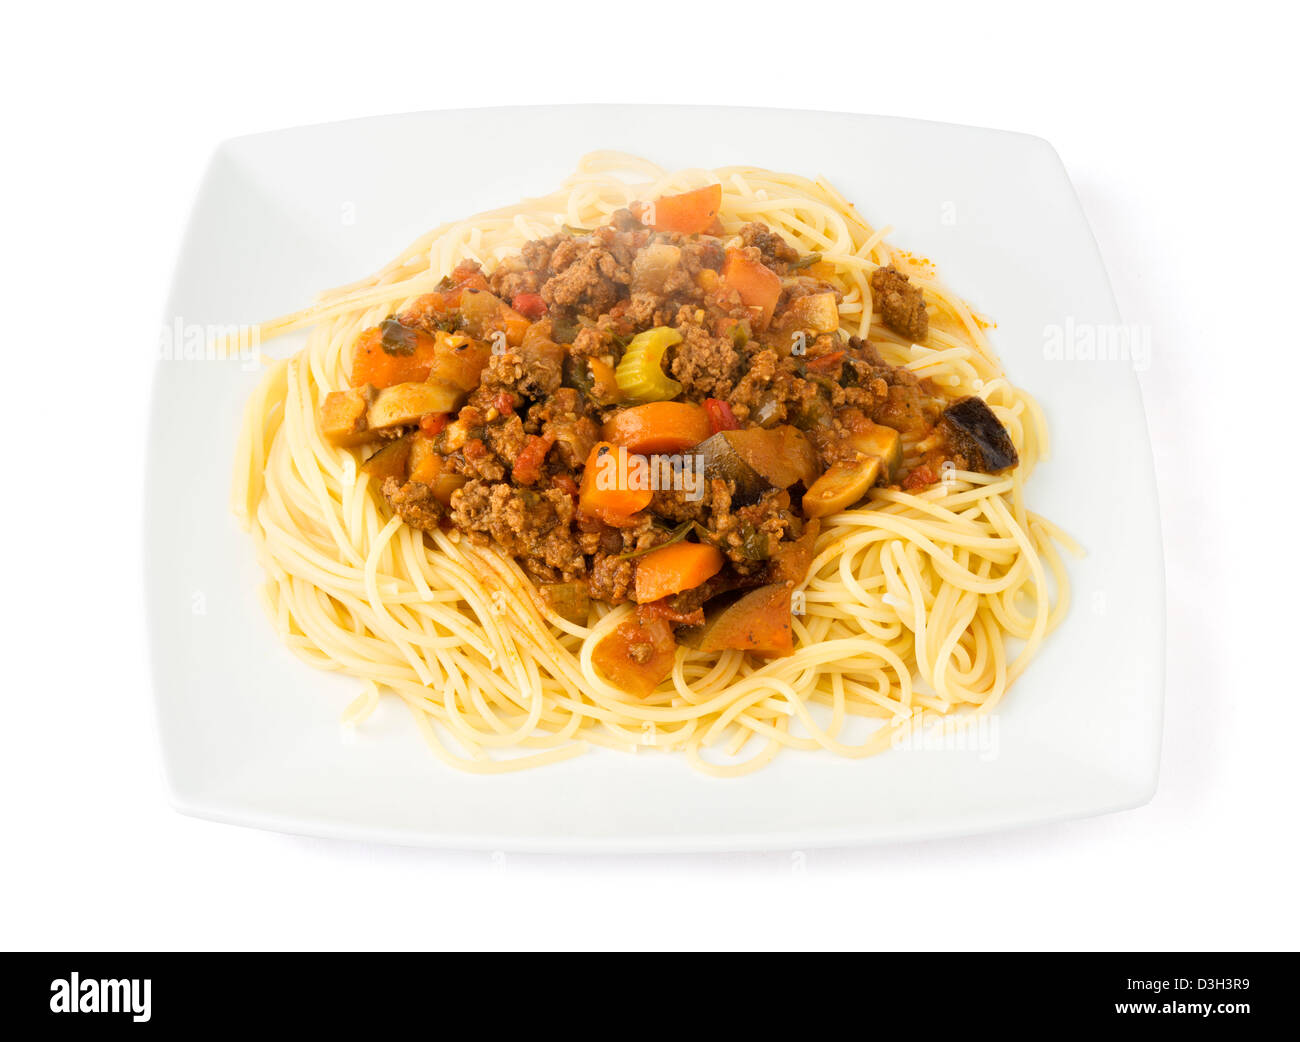 Assiette de spaghetti sauce bolognaise fraîchement préparés Banque D'Images